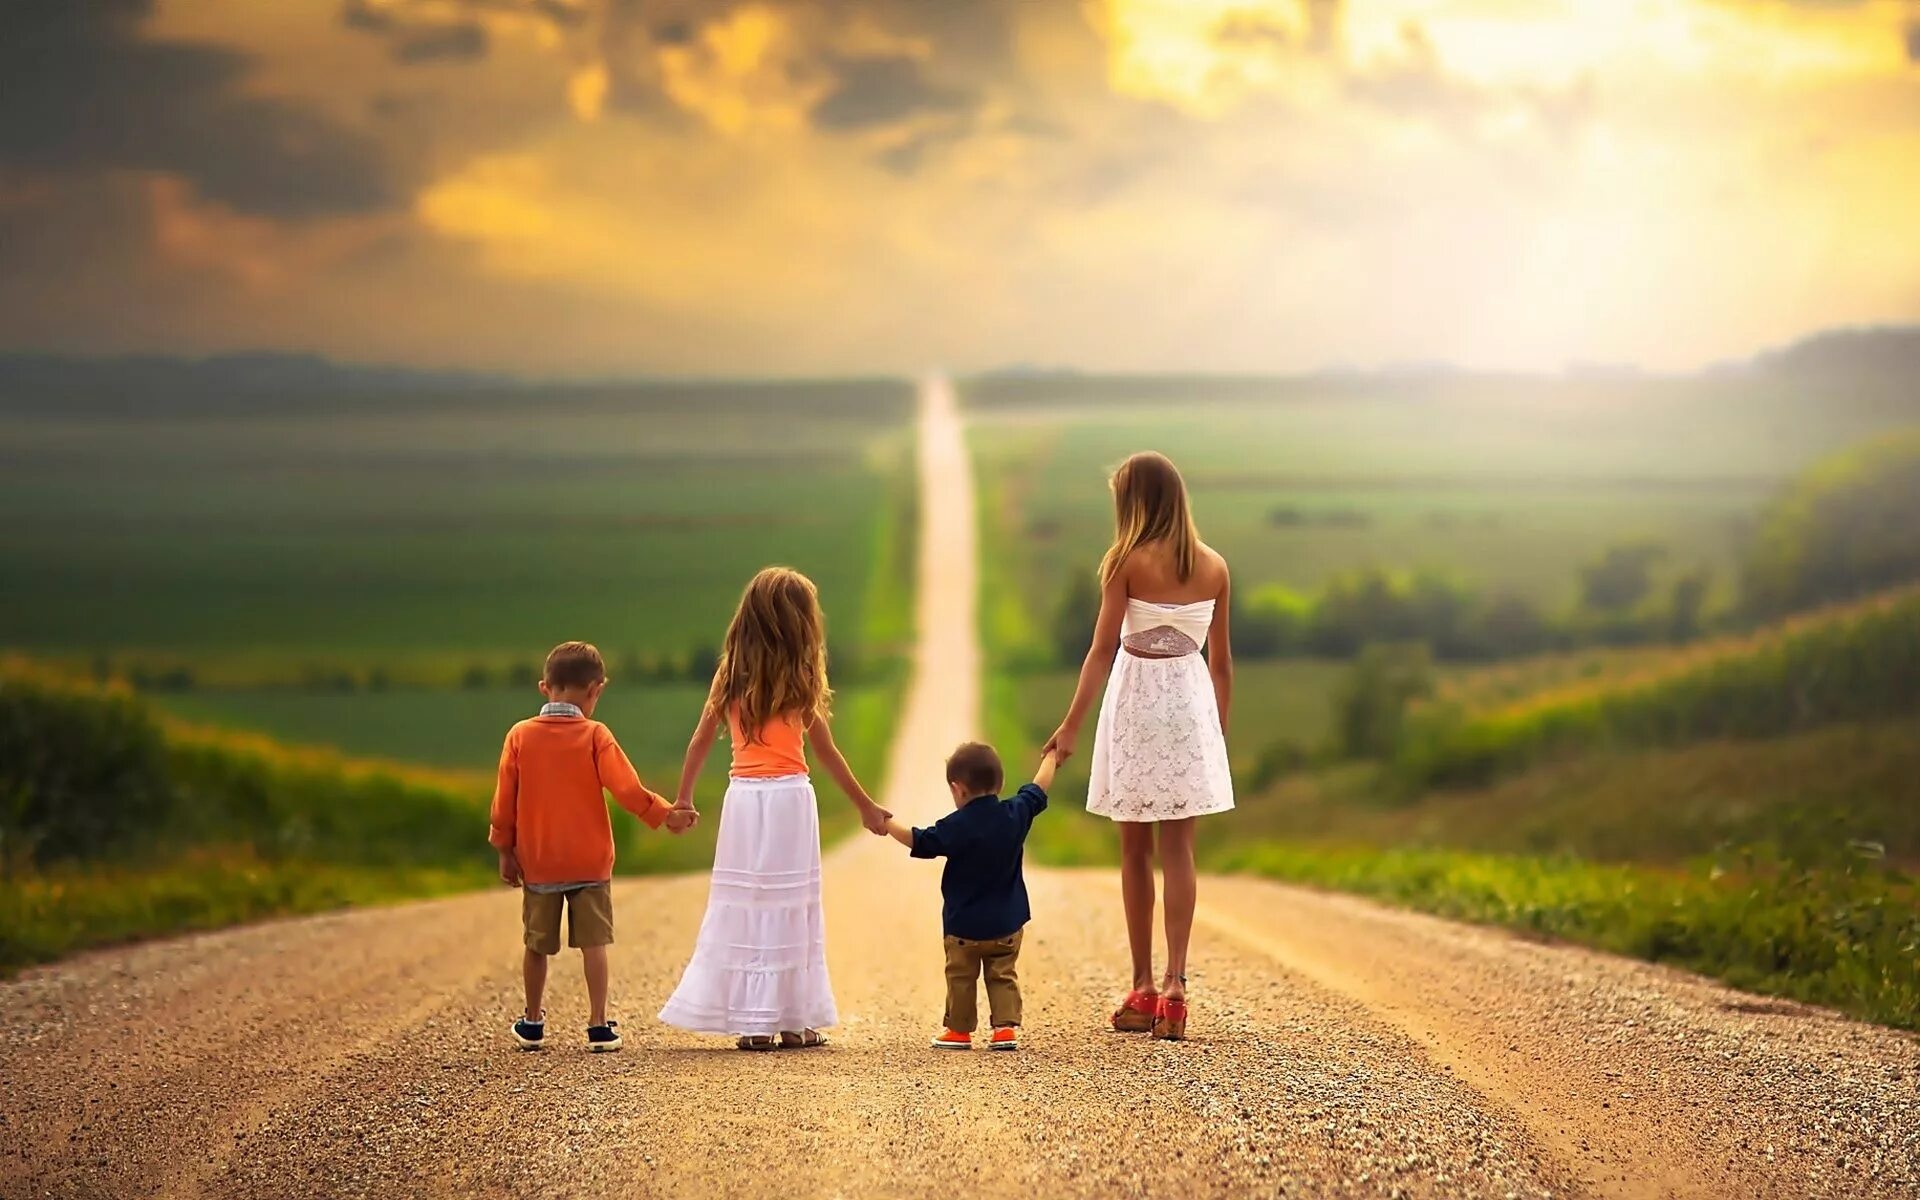 Жизнь счастливая была 7. Счастливое будущее детей. Счастливая дорога. Счастливая семья идет по дороге. Дети идут по дороге.